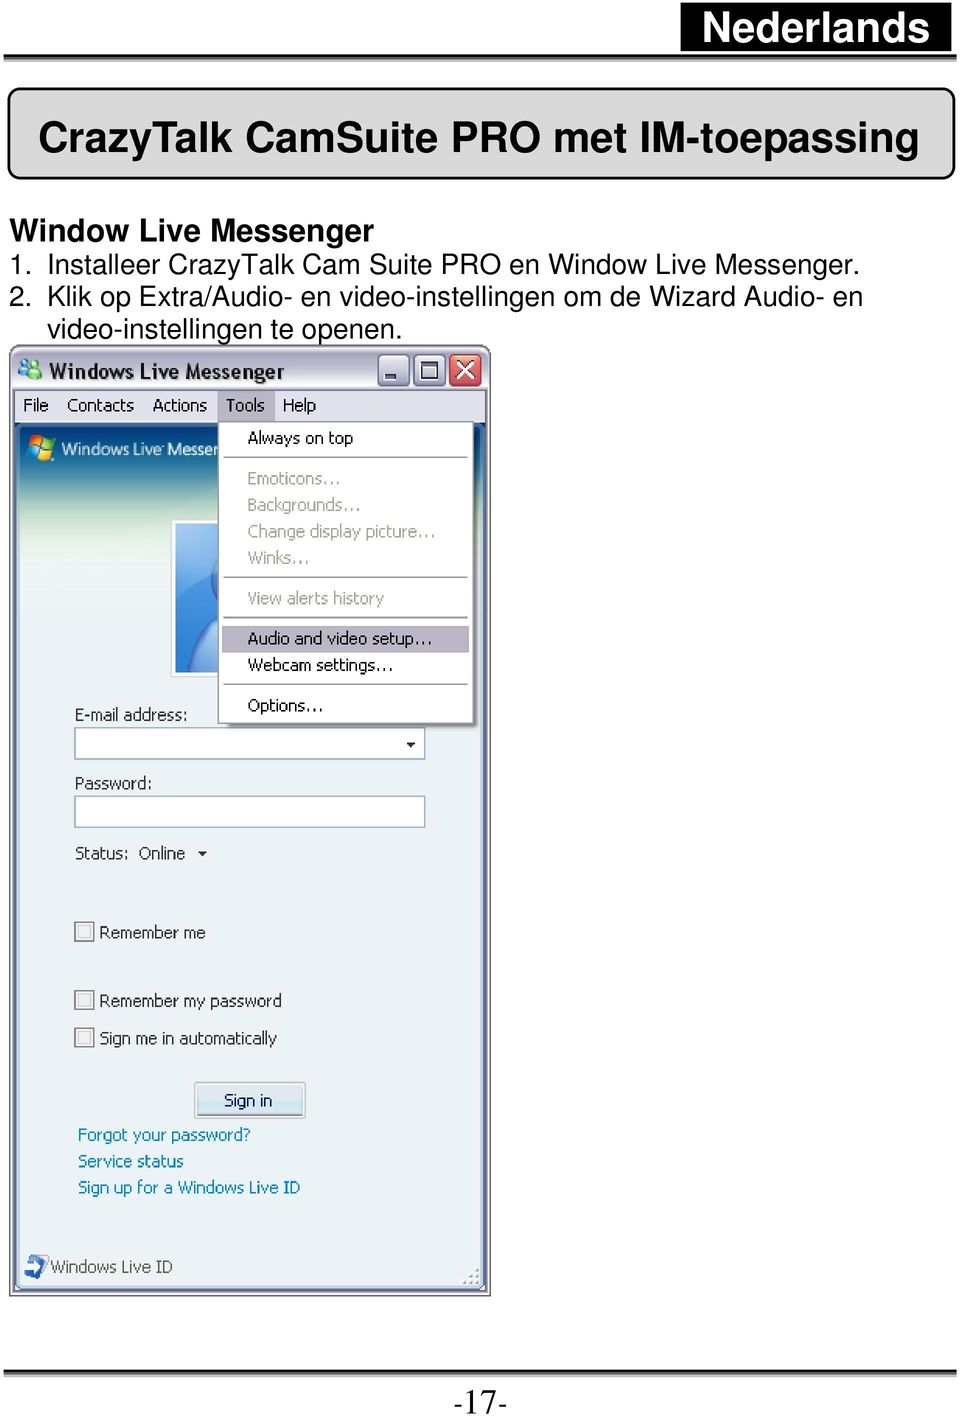 Installeer CrazyTalk Cam Suite PRO en Window Live